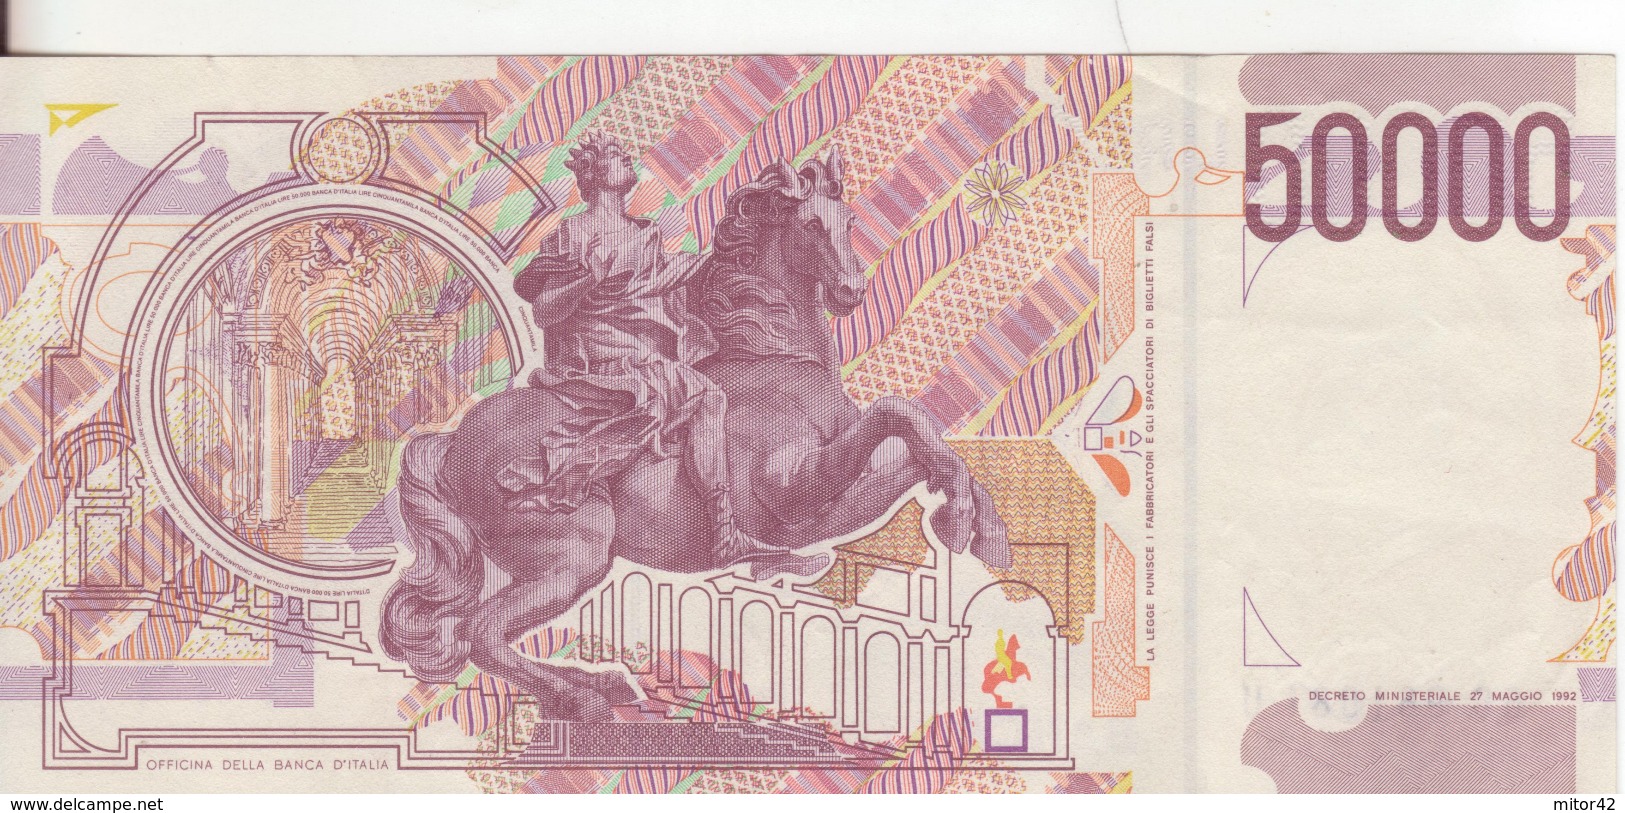 7*-Cartamoneta-Banconota  Italia Repubblica Da L.50.000 Bernini II^ Serie-GC 961081 U- Condizione: Q.F.D.S. - 50000 Liras